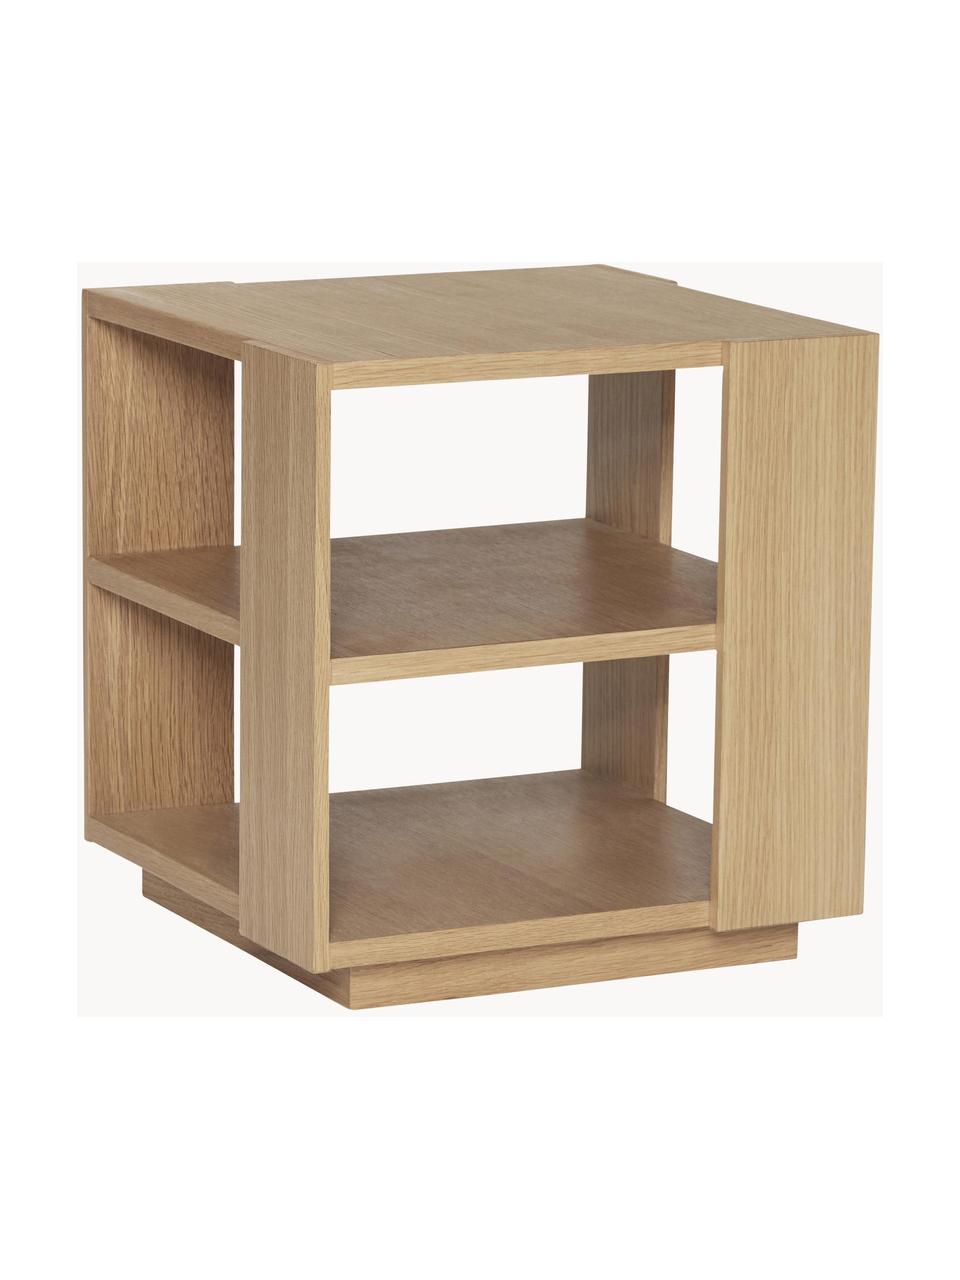 Dřevěný odkládací stolek Merge, Dubová dýha

Tento produkt je vyroben z udržitelných zdrojů dřeva s certifikací FSC®., Dřevo, Š 37 cm, V 38 cm